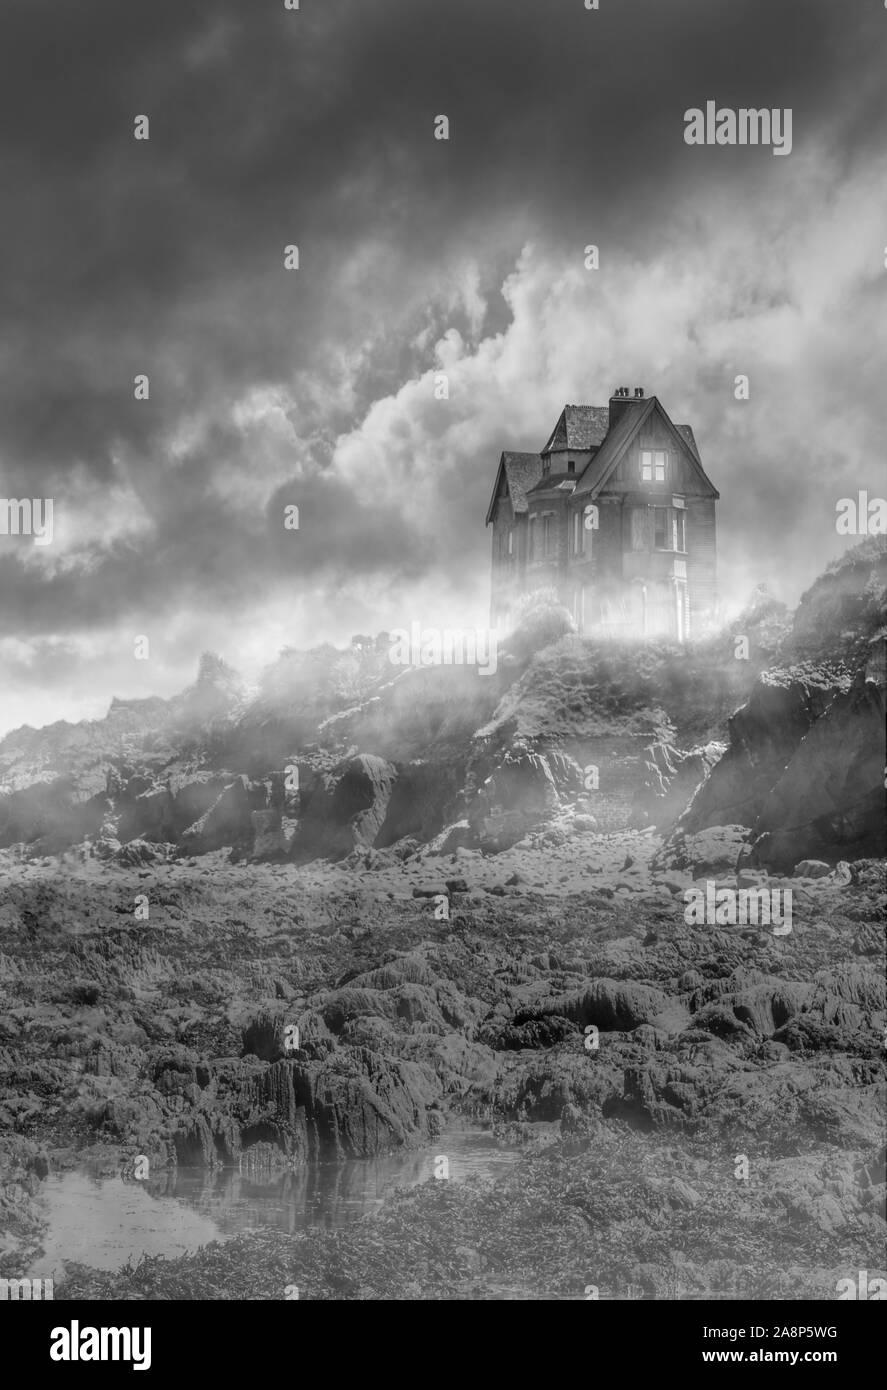 Illustration de l'atmosphère d'un manoir spooky perché sur le bord d'une falaise basse, dans la brume et baigné de lune, adapté à la couverture d'un livre Banque D'Images